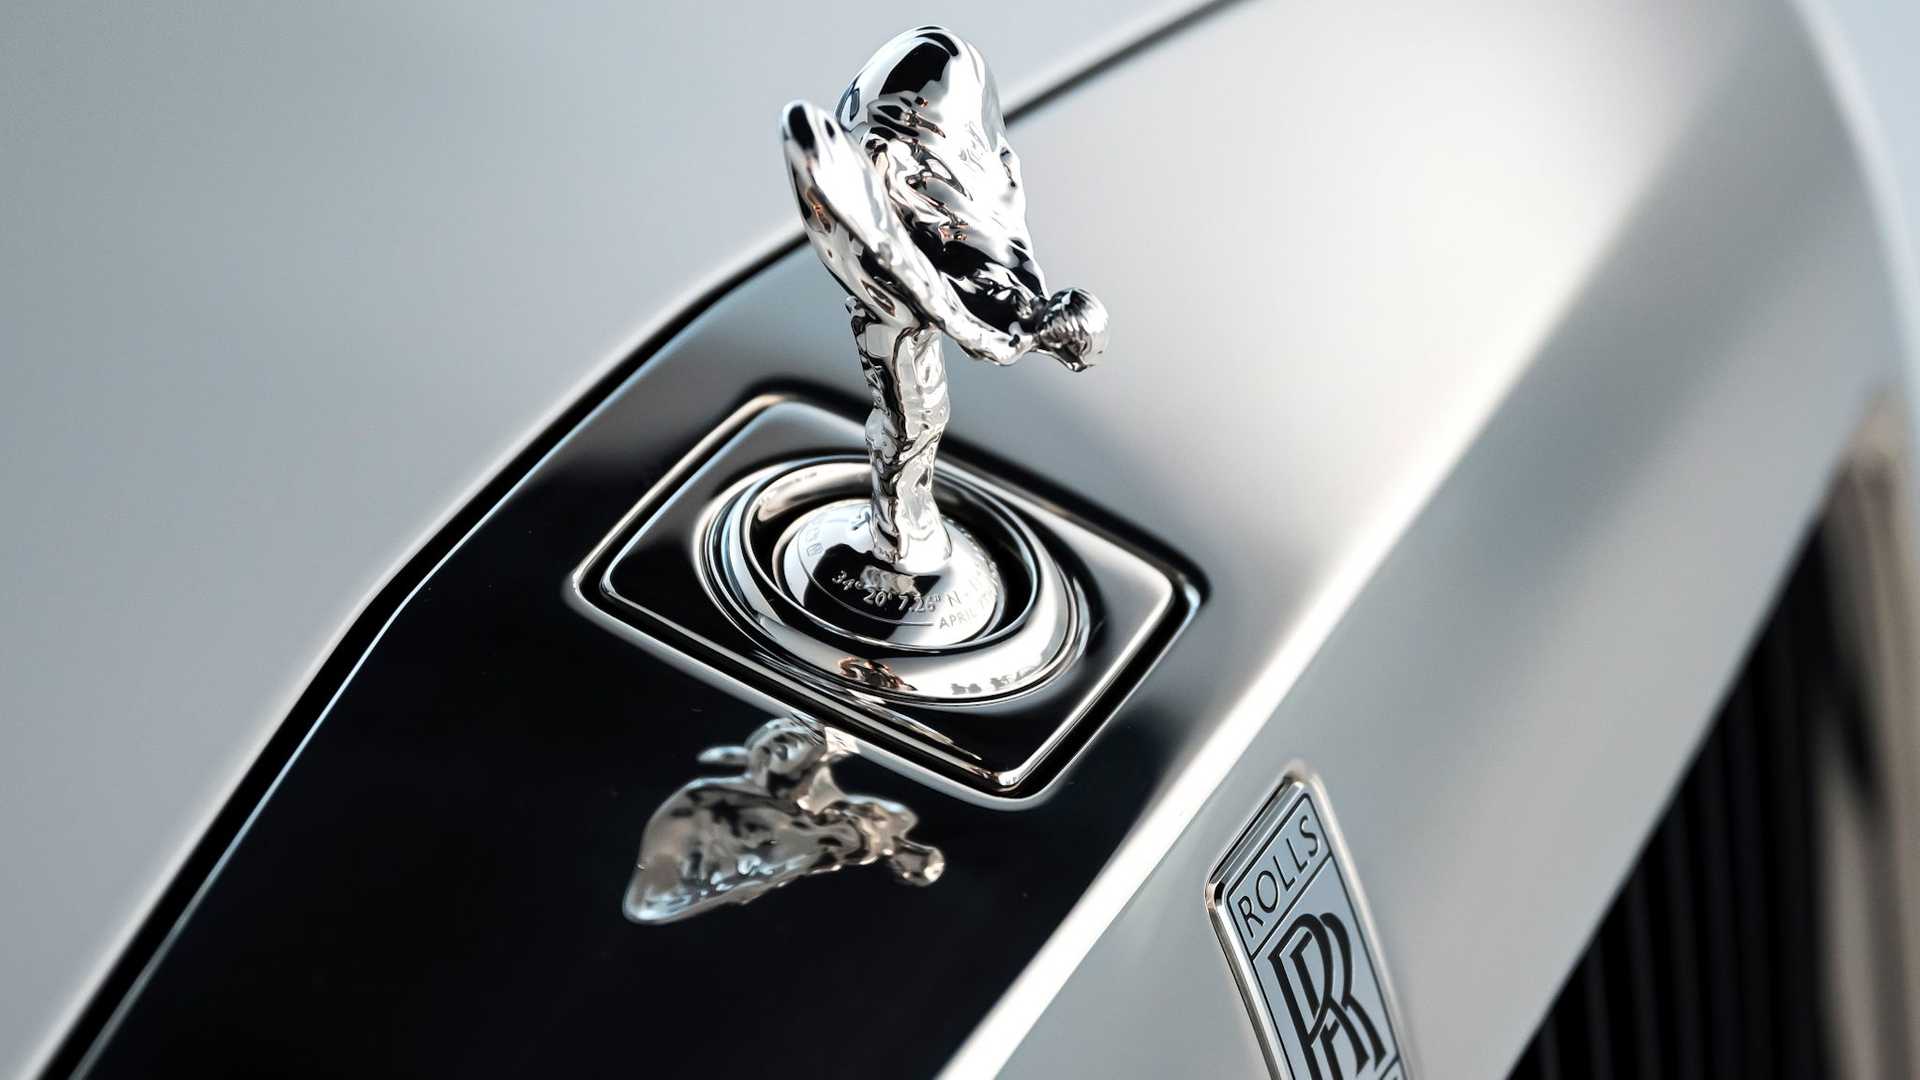 Bộ-đôi-Rolls-Royce-cá-nhân-hóa-kỷ-niệm-dịp-đặc-biệt-của-chủ-nhân (7).jpg